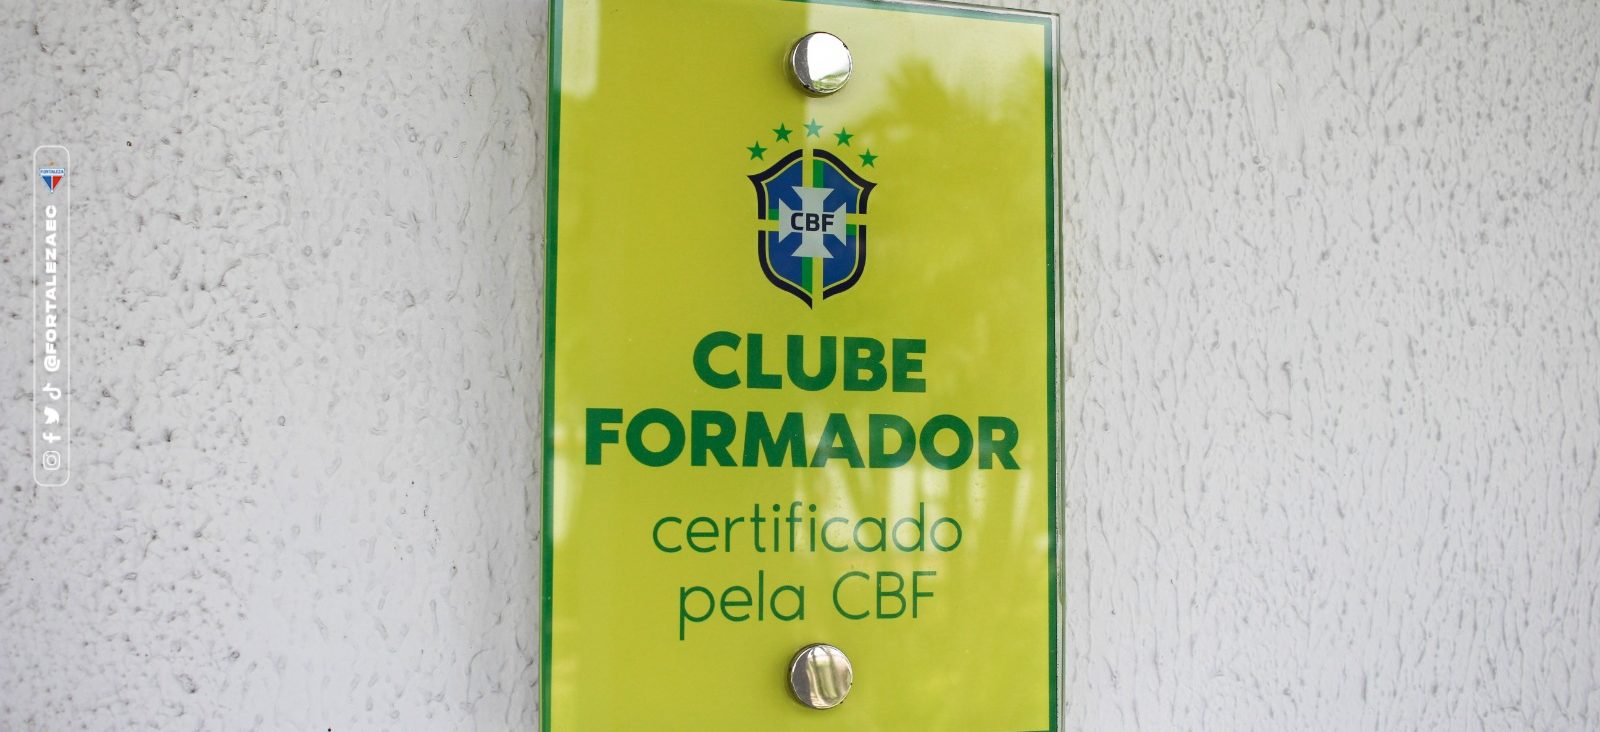 Sport envia último documento e espera recuperar certificado de clube  formador pela CBF, sport